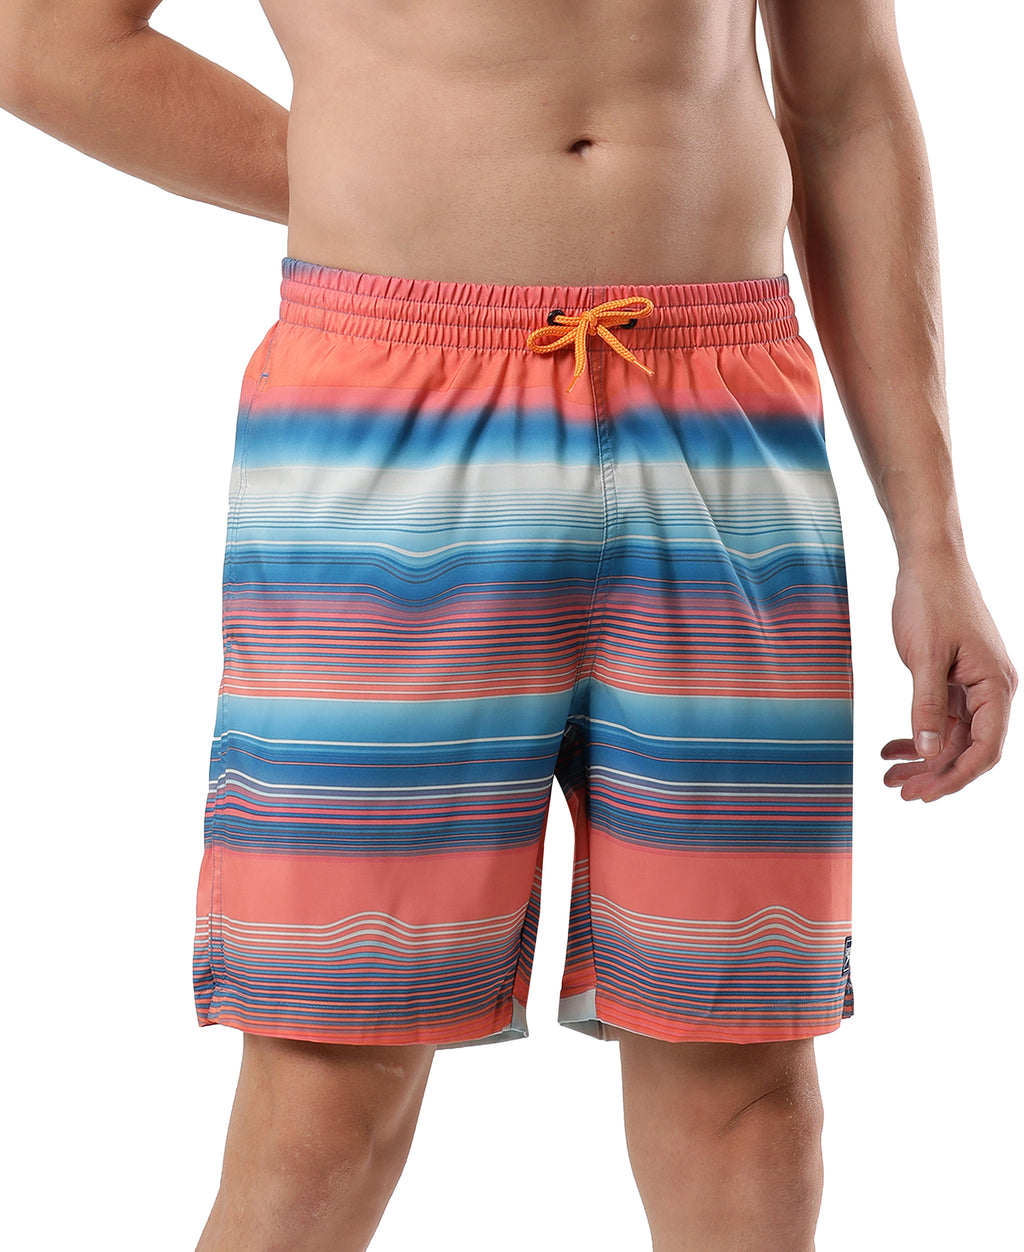 Swimwear for Men - Mens swimming trunks - Swim shorts men - swimming costumes for guys online